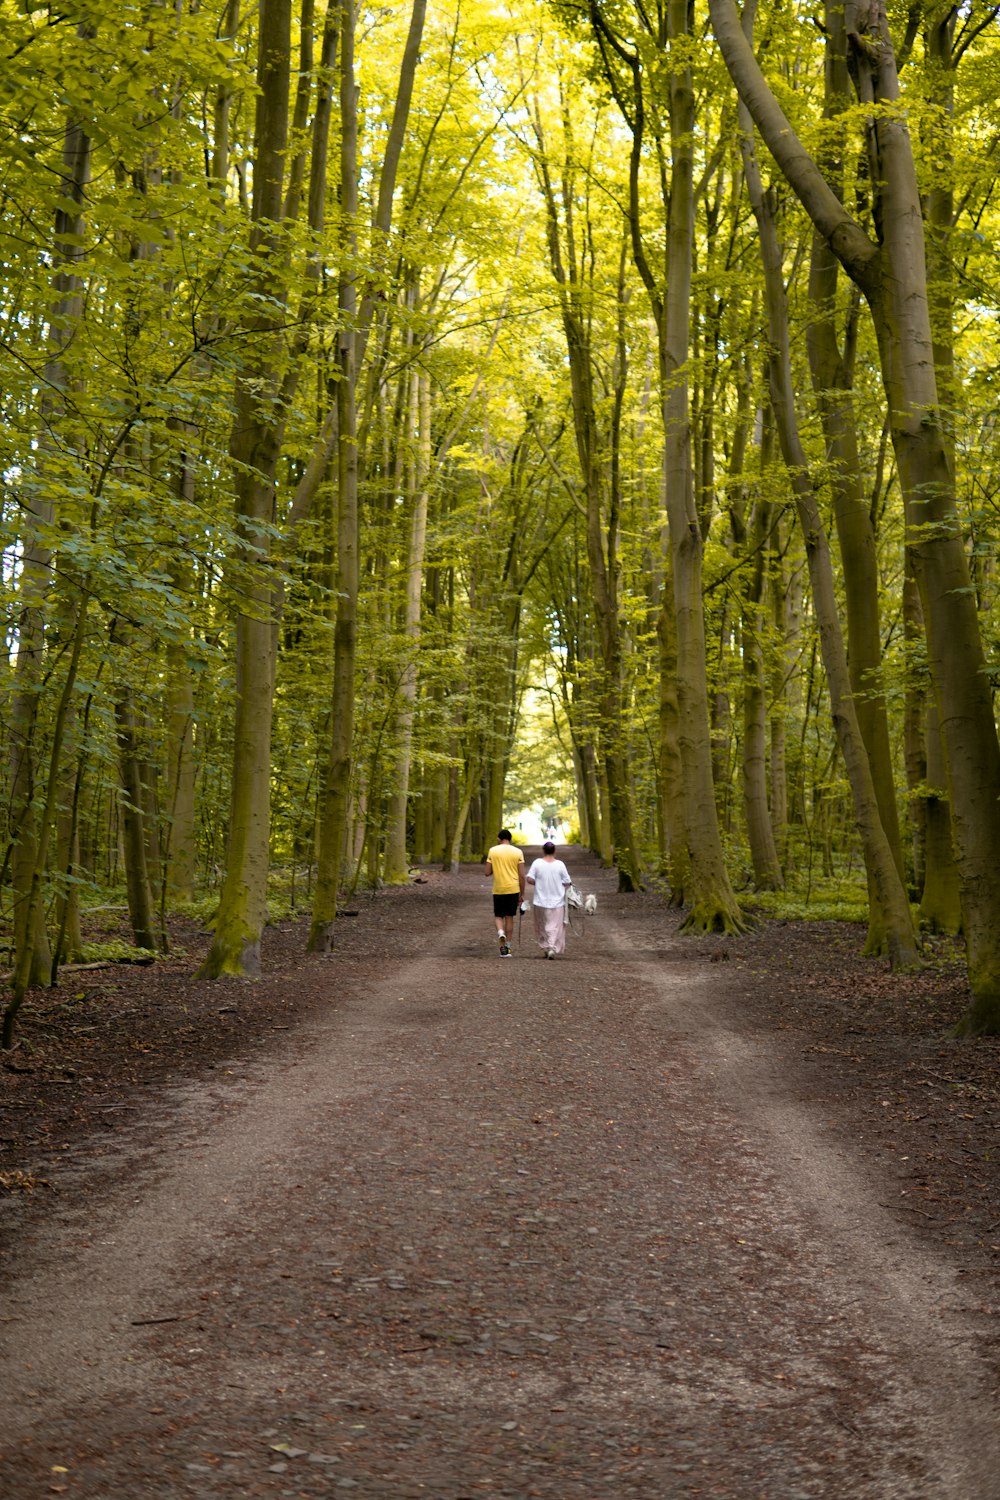 Frau in weißer Jacke und schwarzer Hose geht tagsüber auf dem Weg zwischen grünen Bäumen